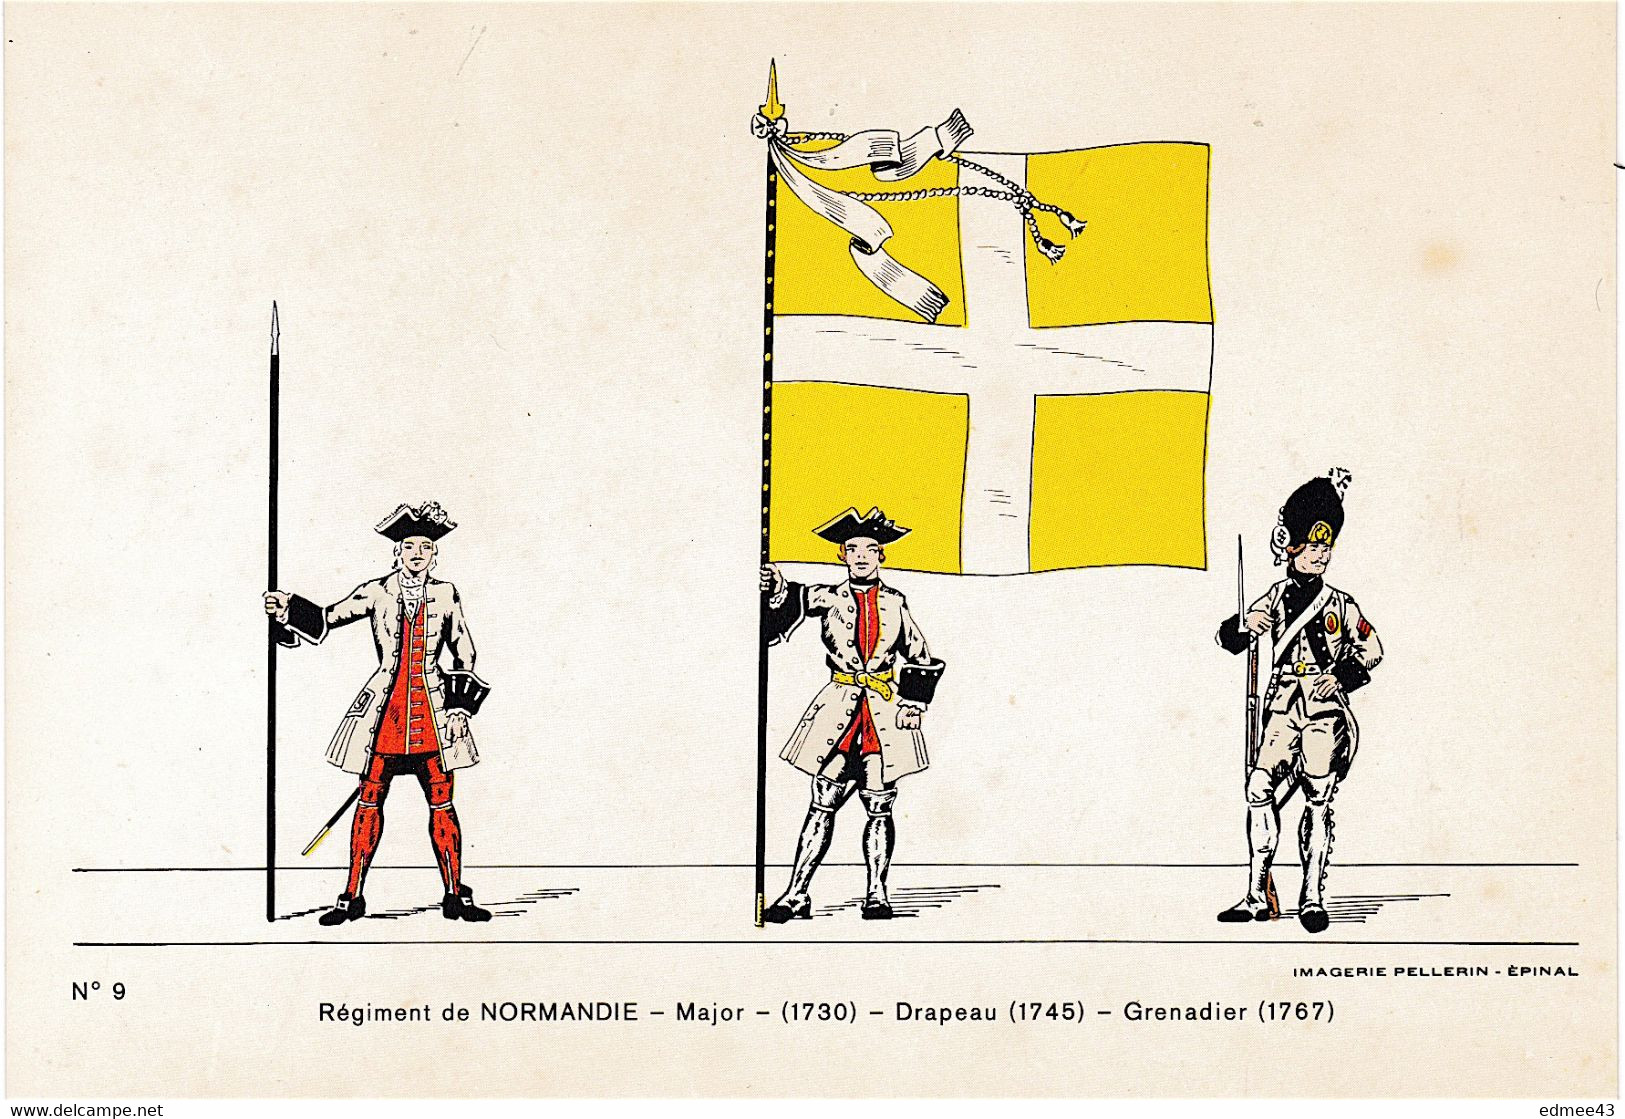 Jolie CP Série éditée En 1978 Imagerie Pellerin, N°9 Régiment De Normandie,18e Siècle - Flaggen